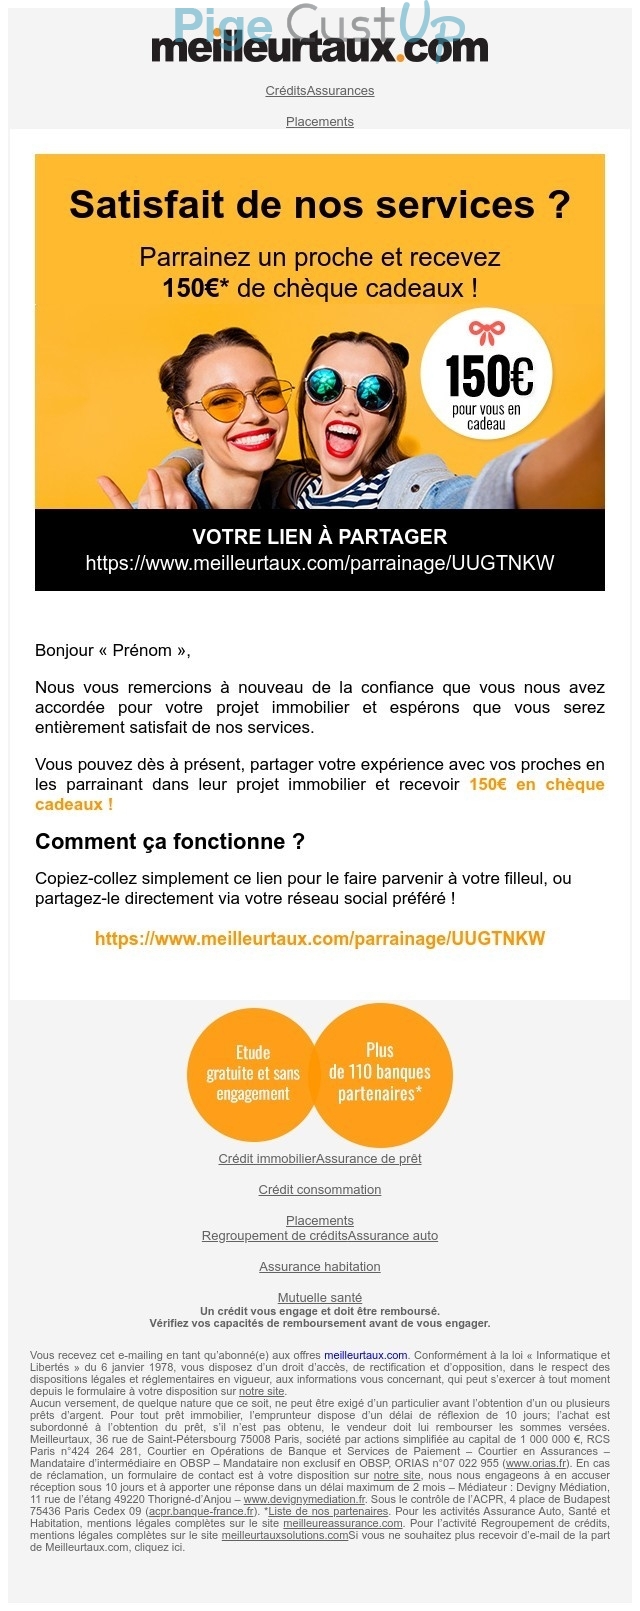 Exemple de Type de media  e-mailing - Meilleurtaux.com - Marketing Acquisition - Parrainage - Marketing relationnel - Remerciements